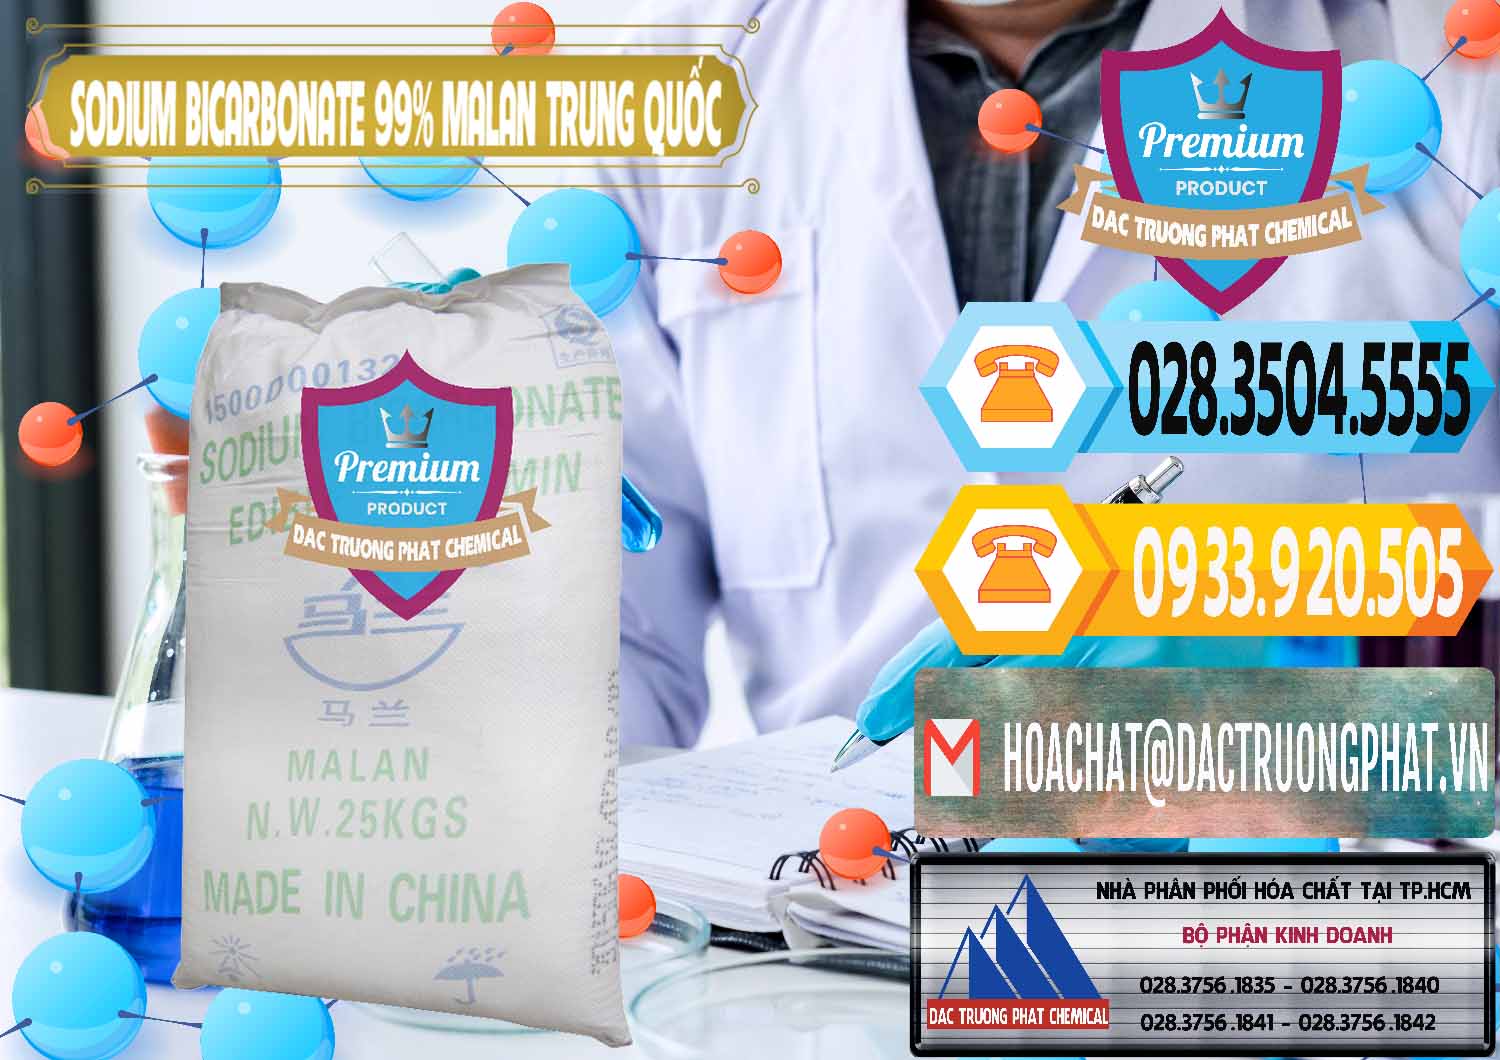 Đơn vị chuyên cung ứng ( bán ) Sodium Bicarbonate – Bicar NaHCO3 Malan Trung Quốc China - 0218 - Công ty nhập khẩu & cung cấp hóa chất tại TP.HCM - hoachattayrua.net